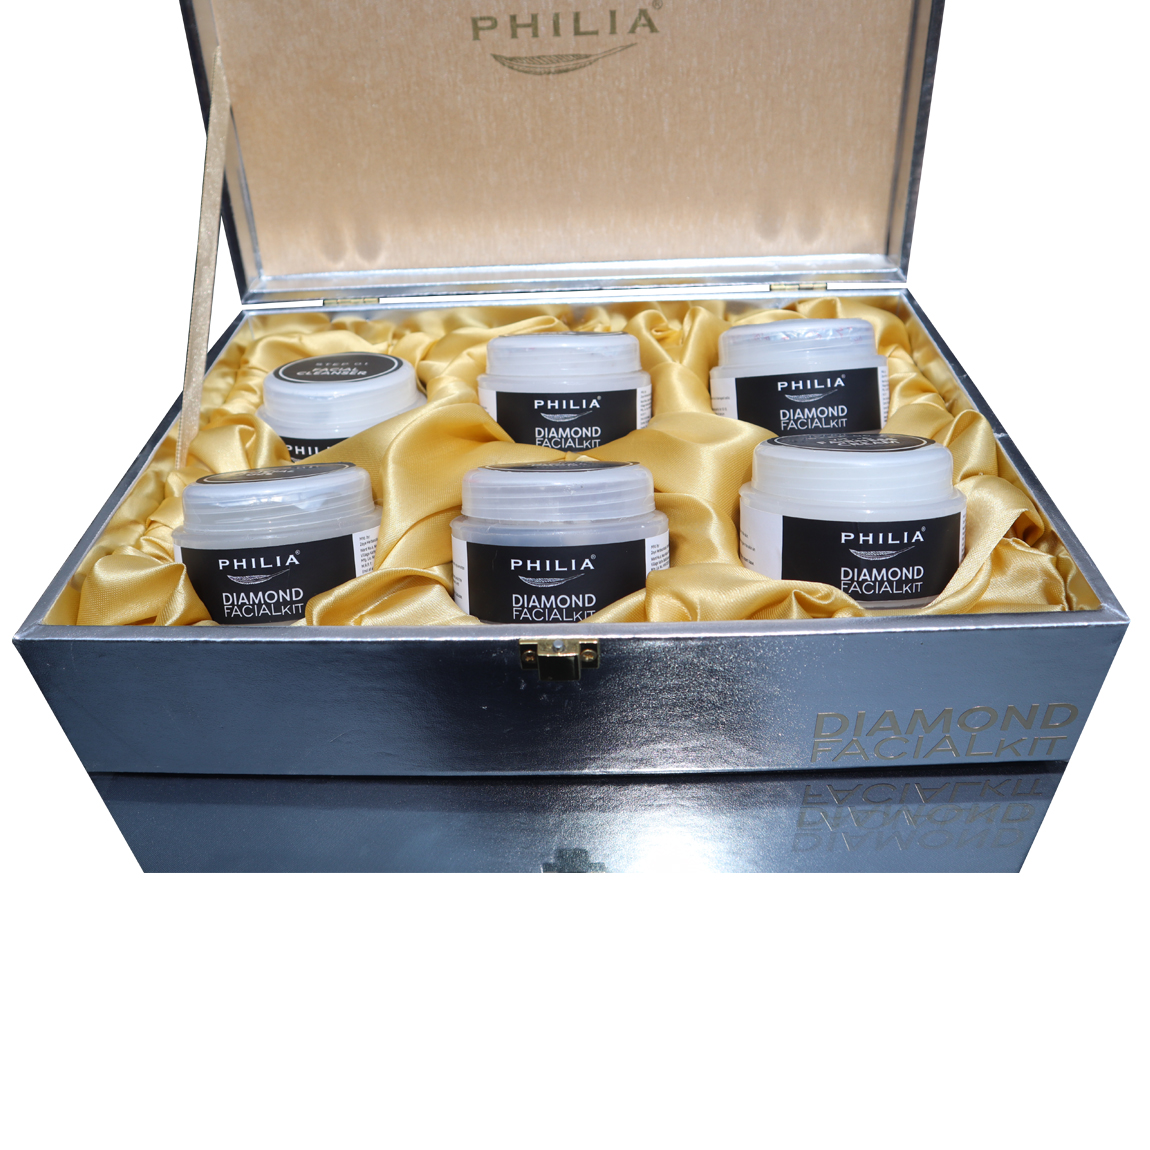 Philia Diamond Facial Kit